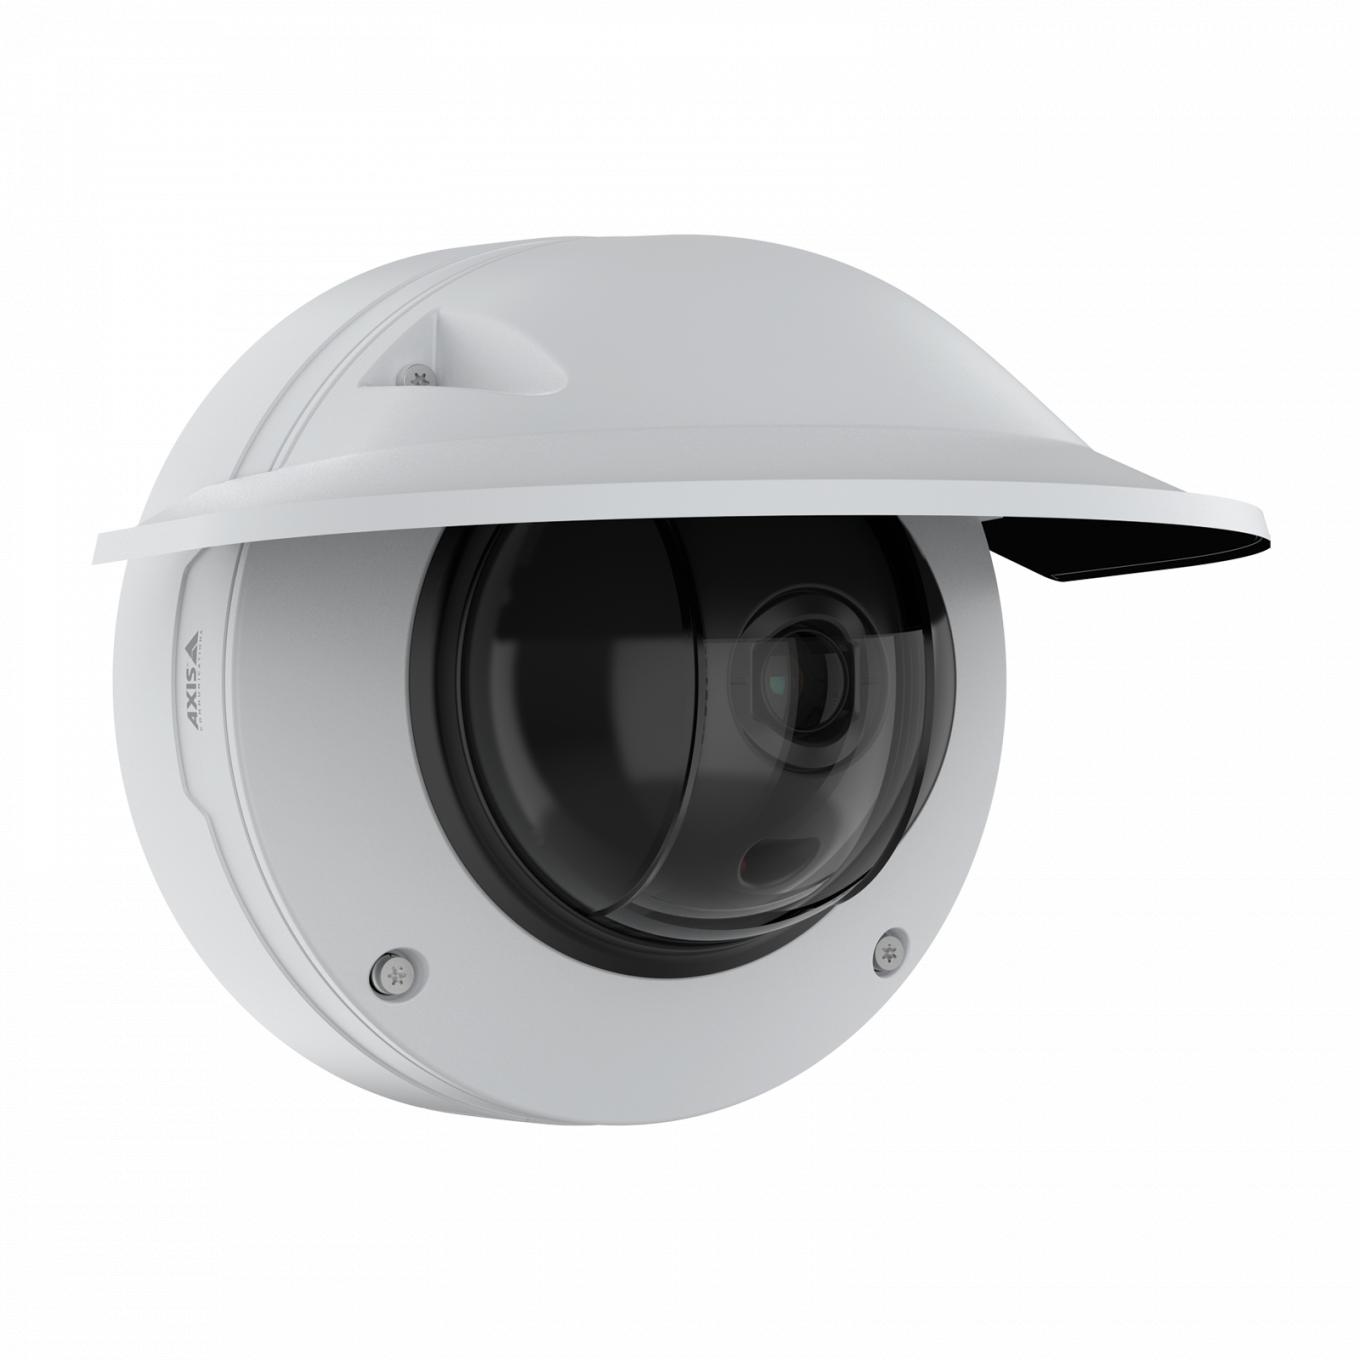 AXIS Q3536-LVE Dome Camera com proteção climática vista pelo ângulo direito